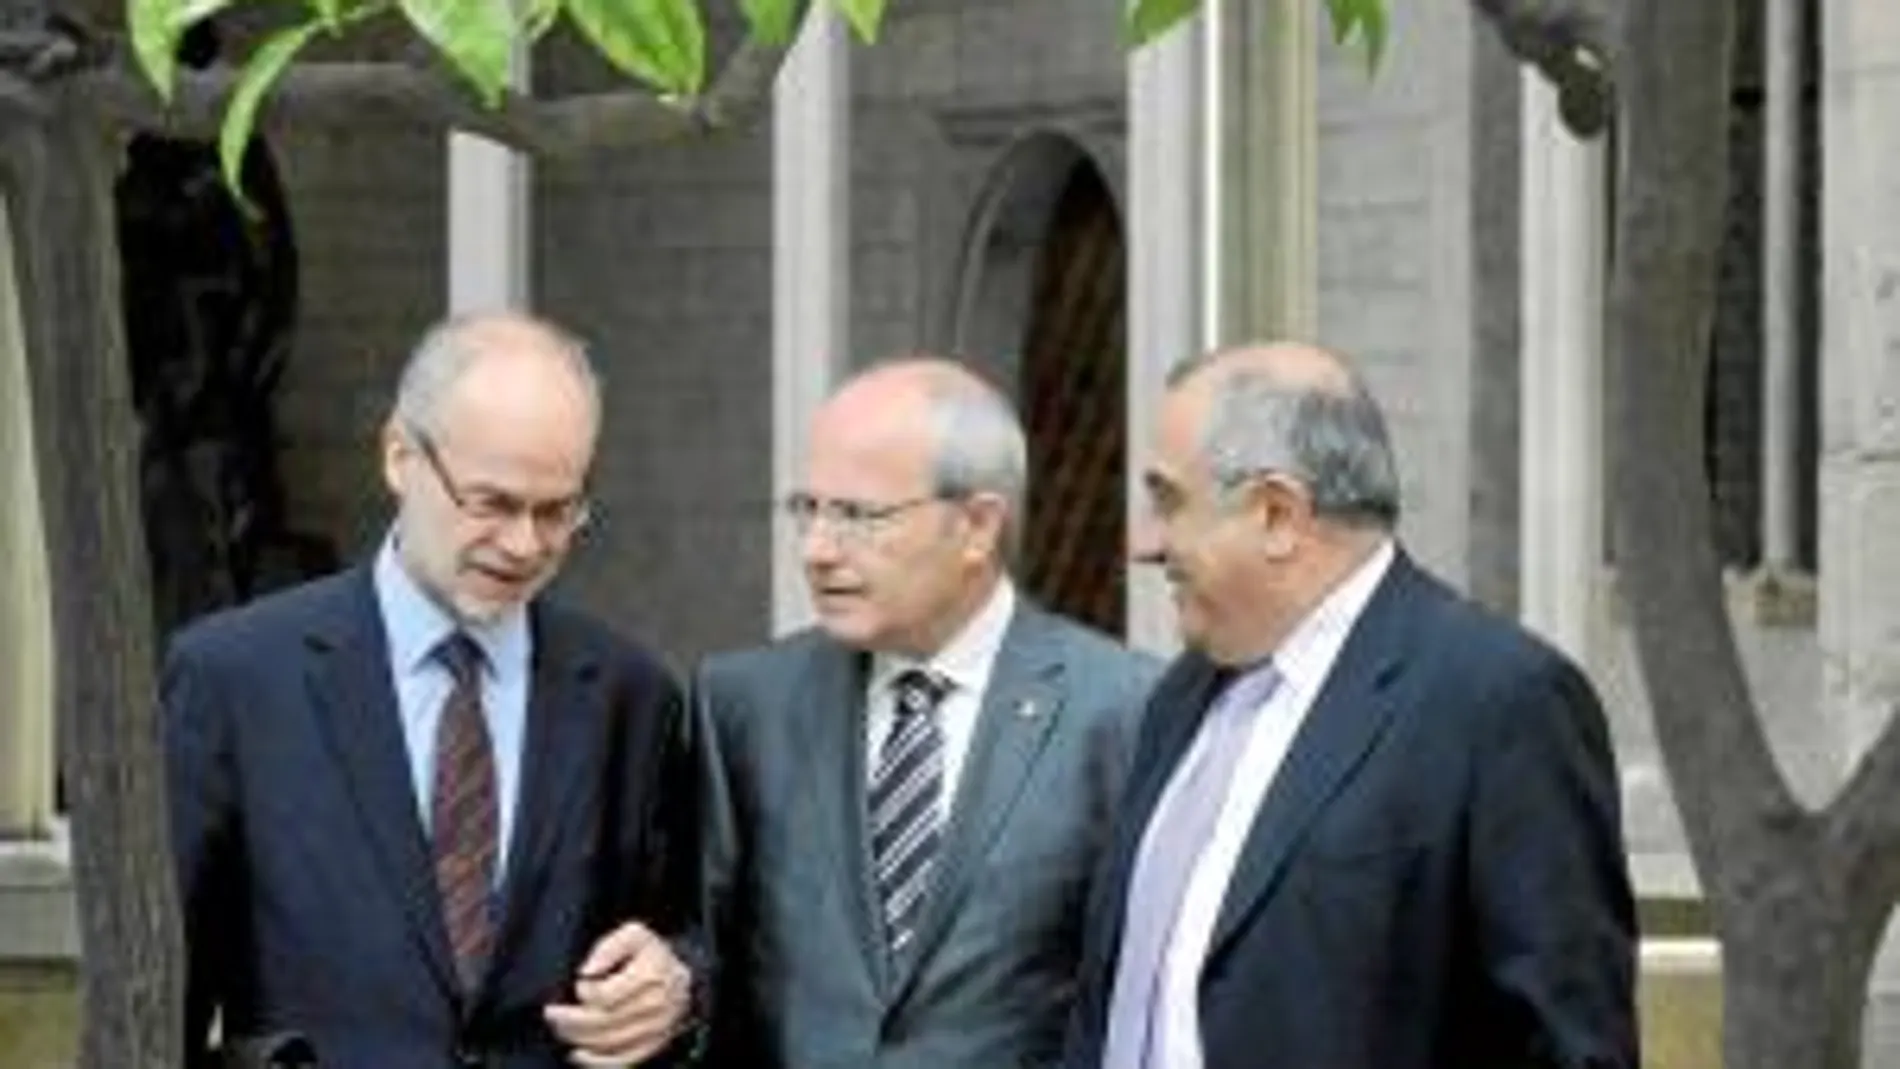 El consejero de Economía, Antoni Castells; el president Montilla; y el consejero de Obras Públicas, Joaquim Nadal, ayer en la Generalitat